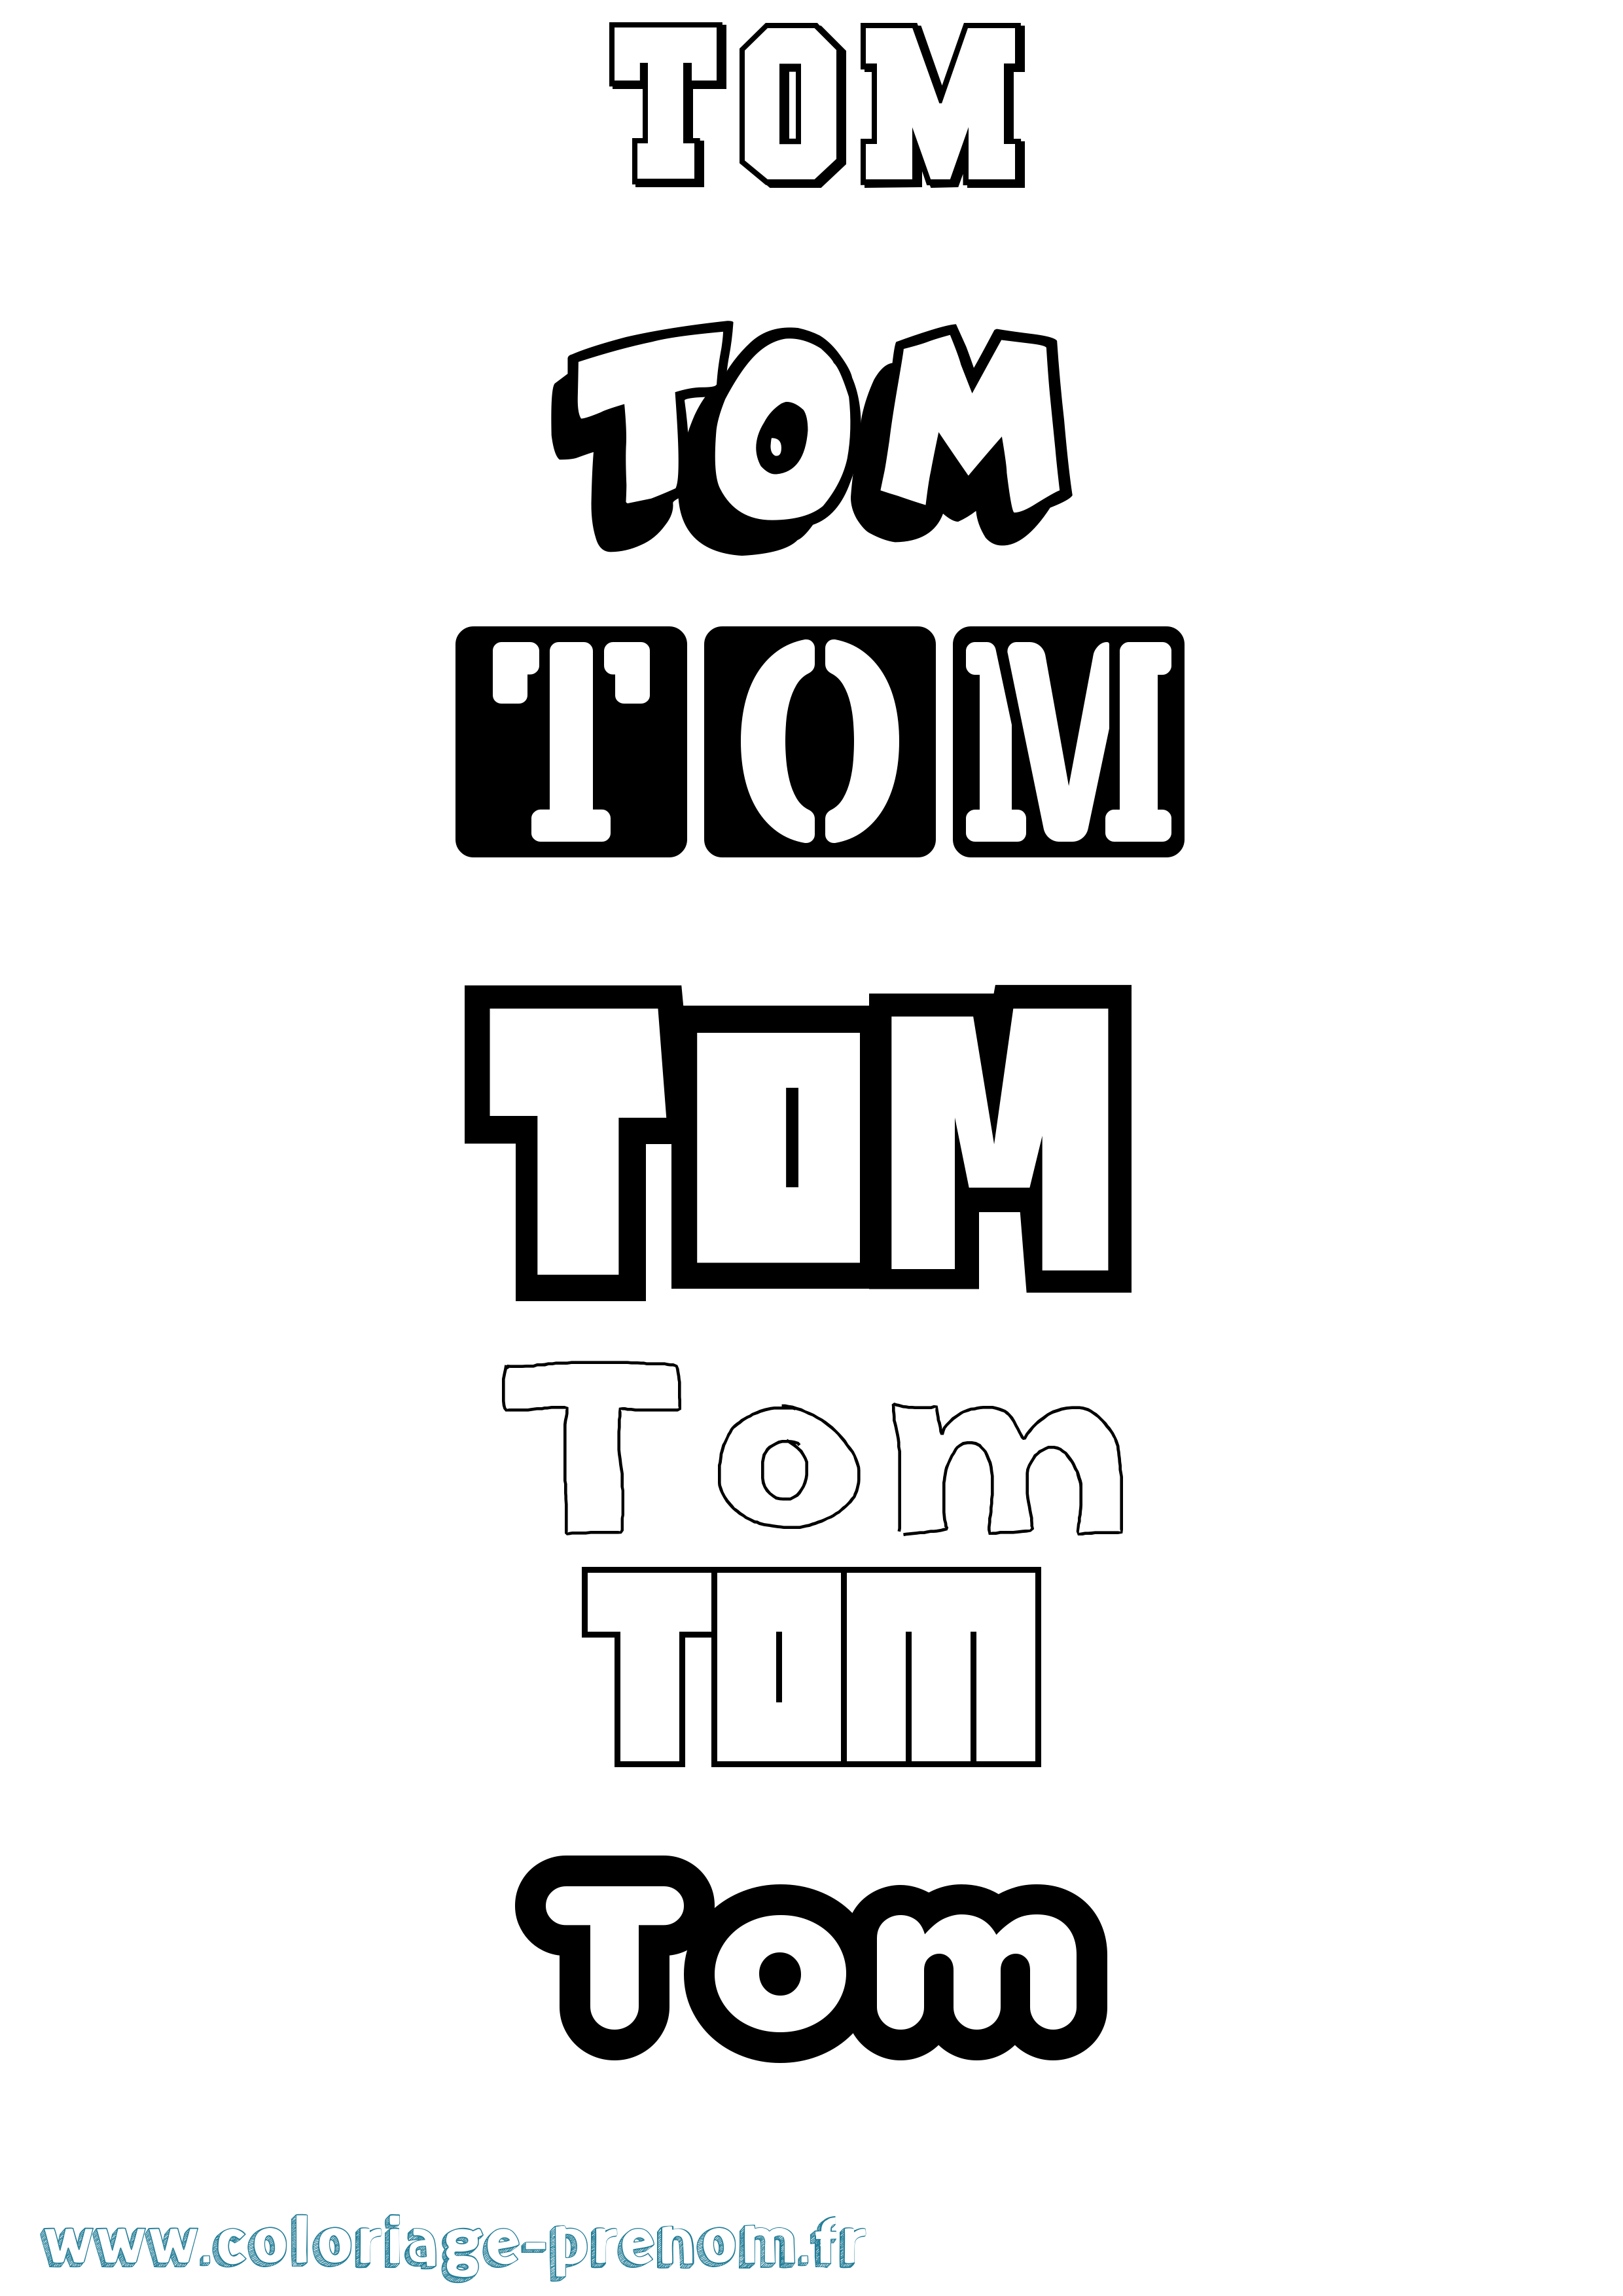 Coloriage prénom Tom